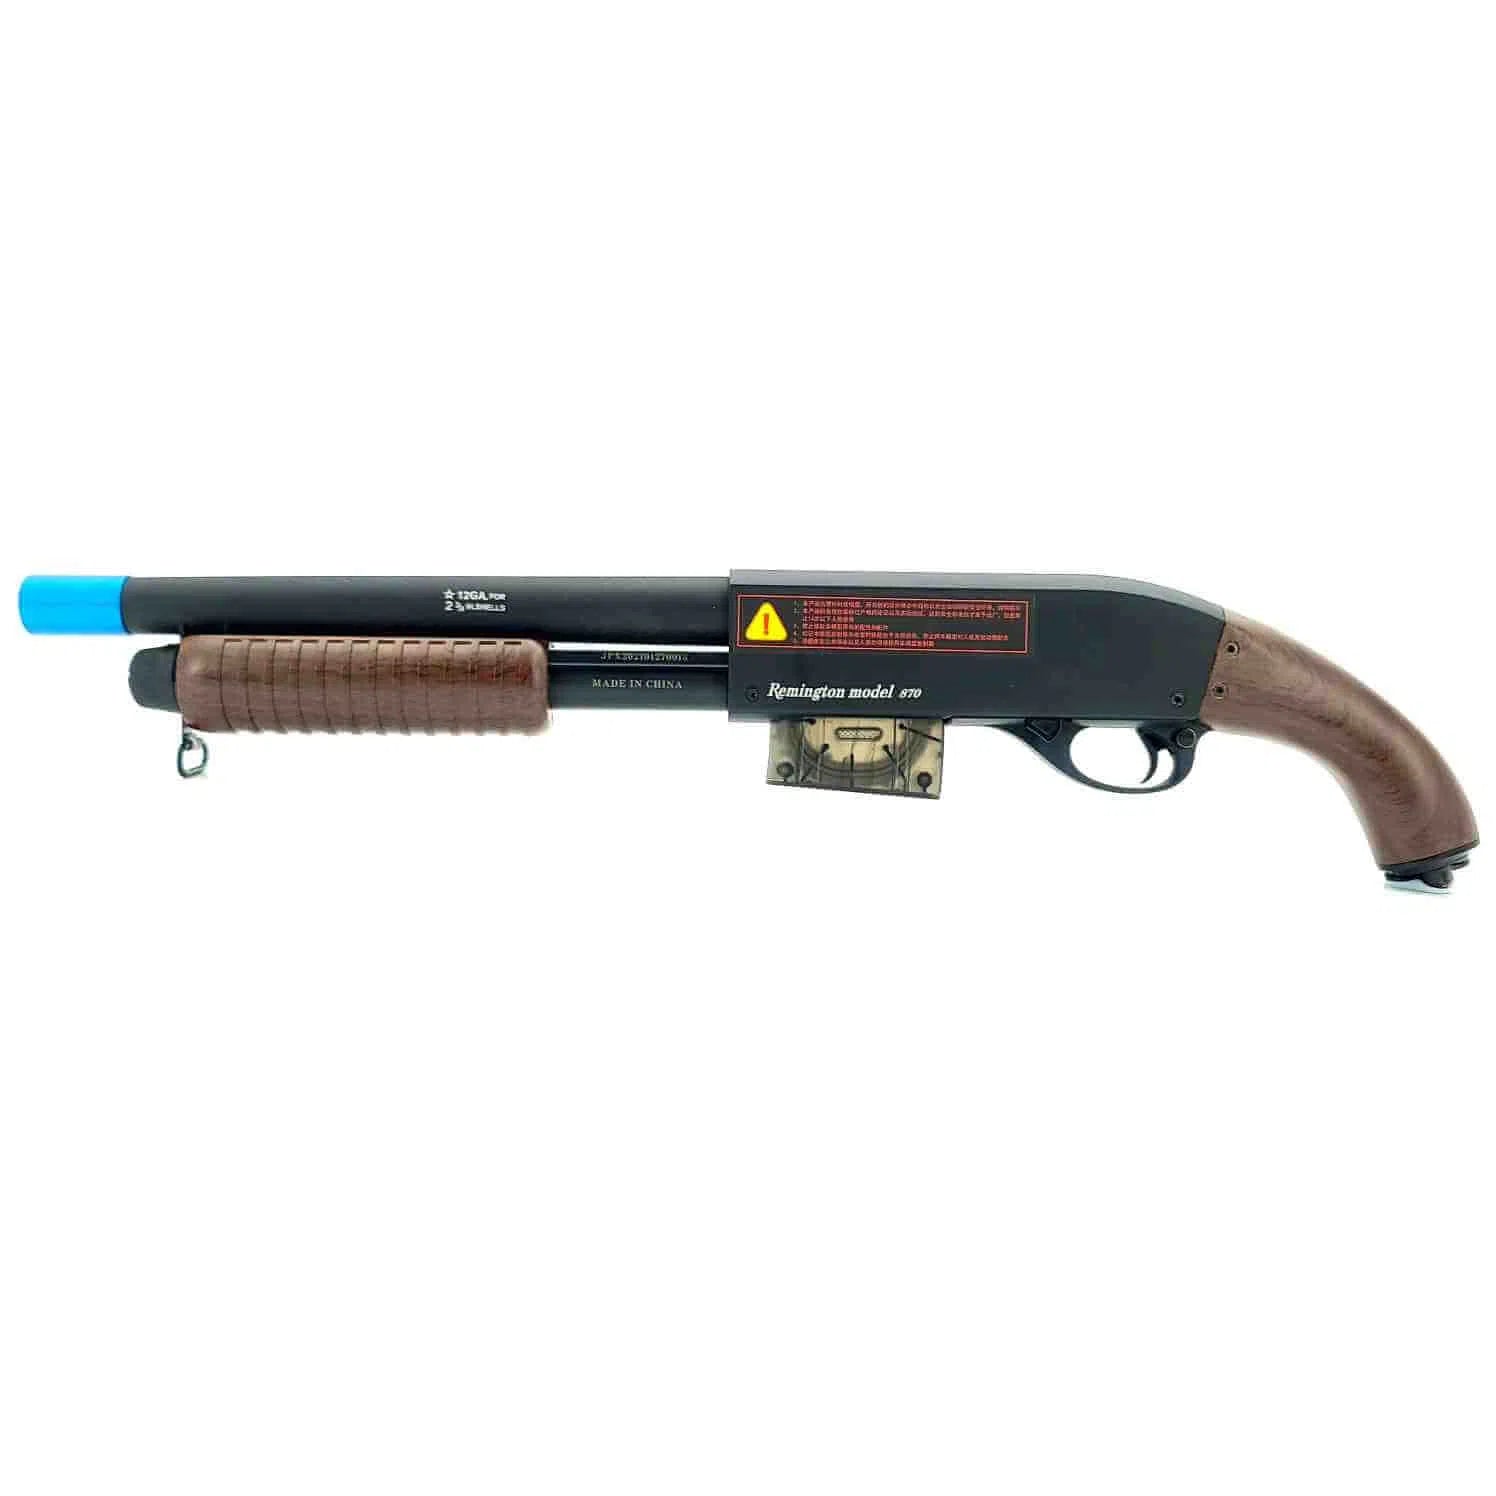 XYL CA870 Manual Pump Action Gel Blaster-m416gelblaster-brown-m416gelblaster